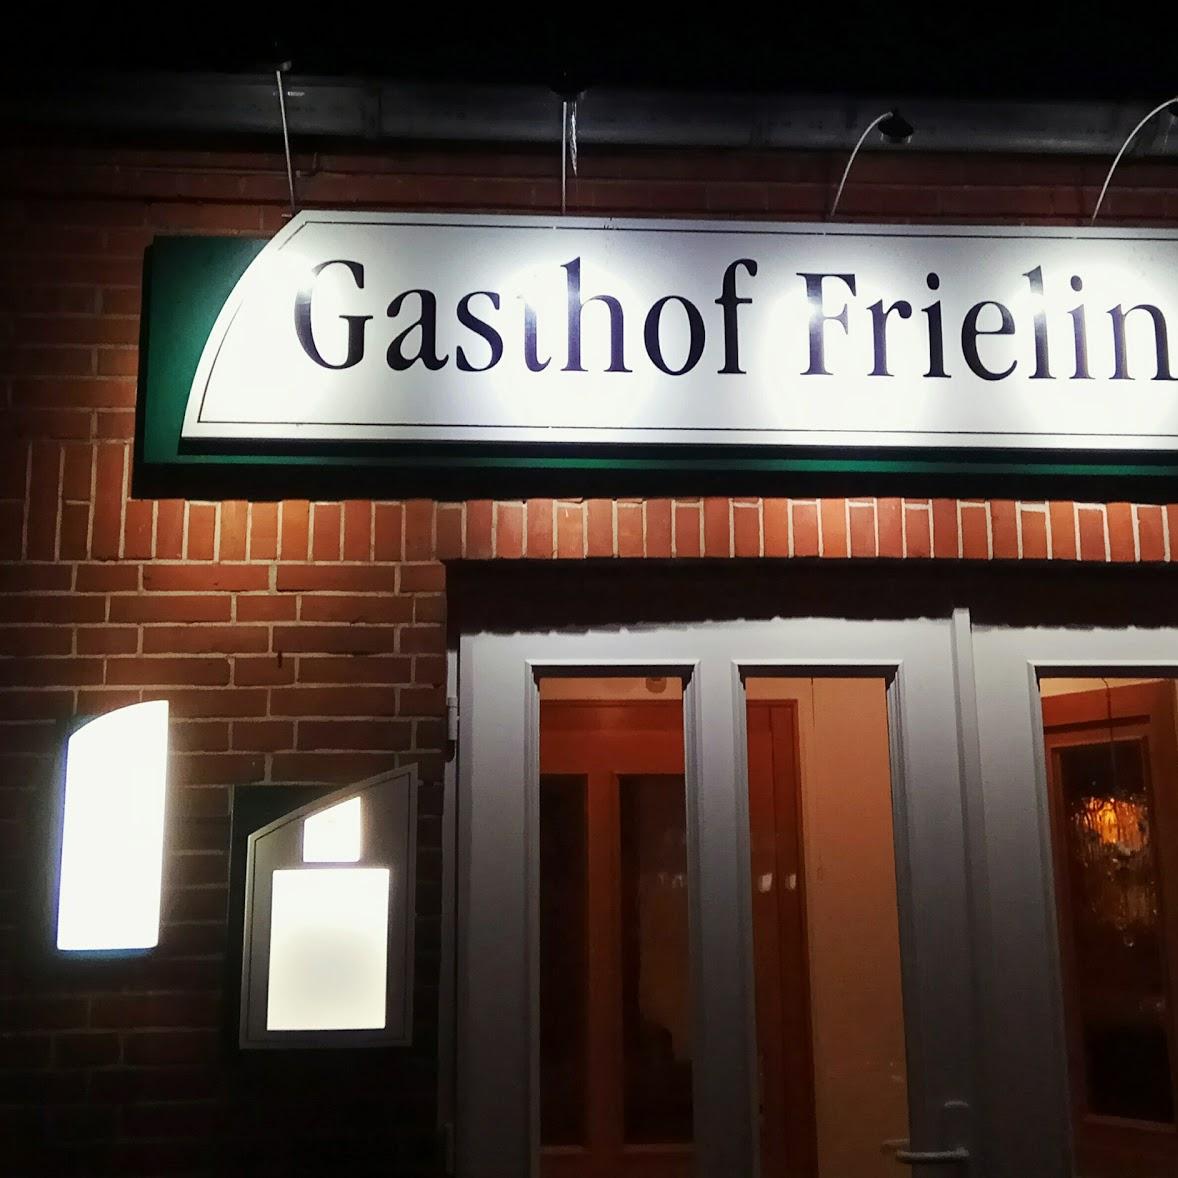 Restaurant "Gasthof Frieling" in  Emstek